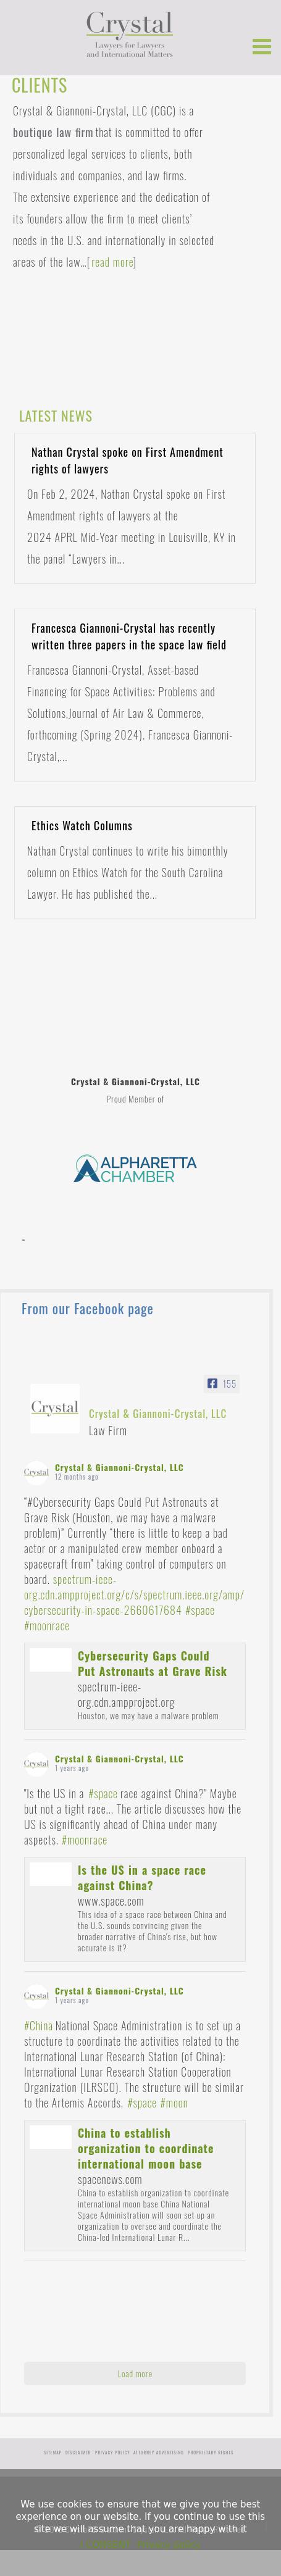 Crystal & Giannoni-Crystal, LLC - Charleston SC Lawyers